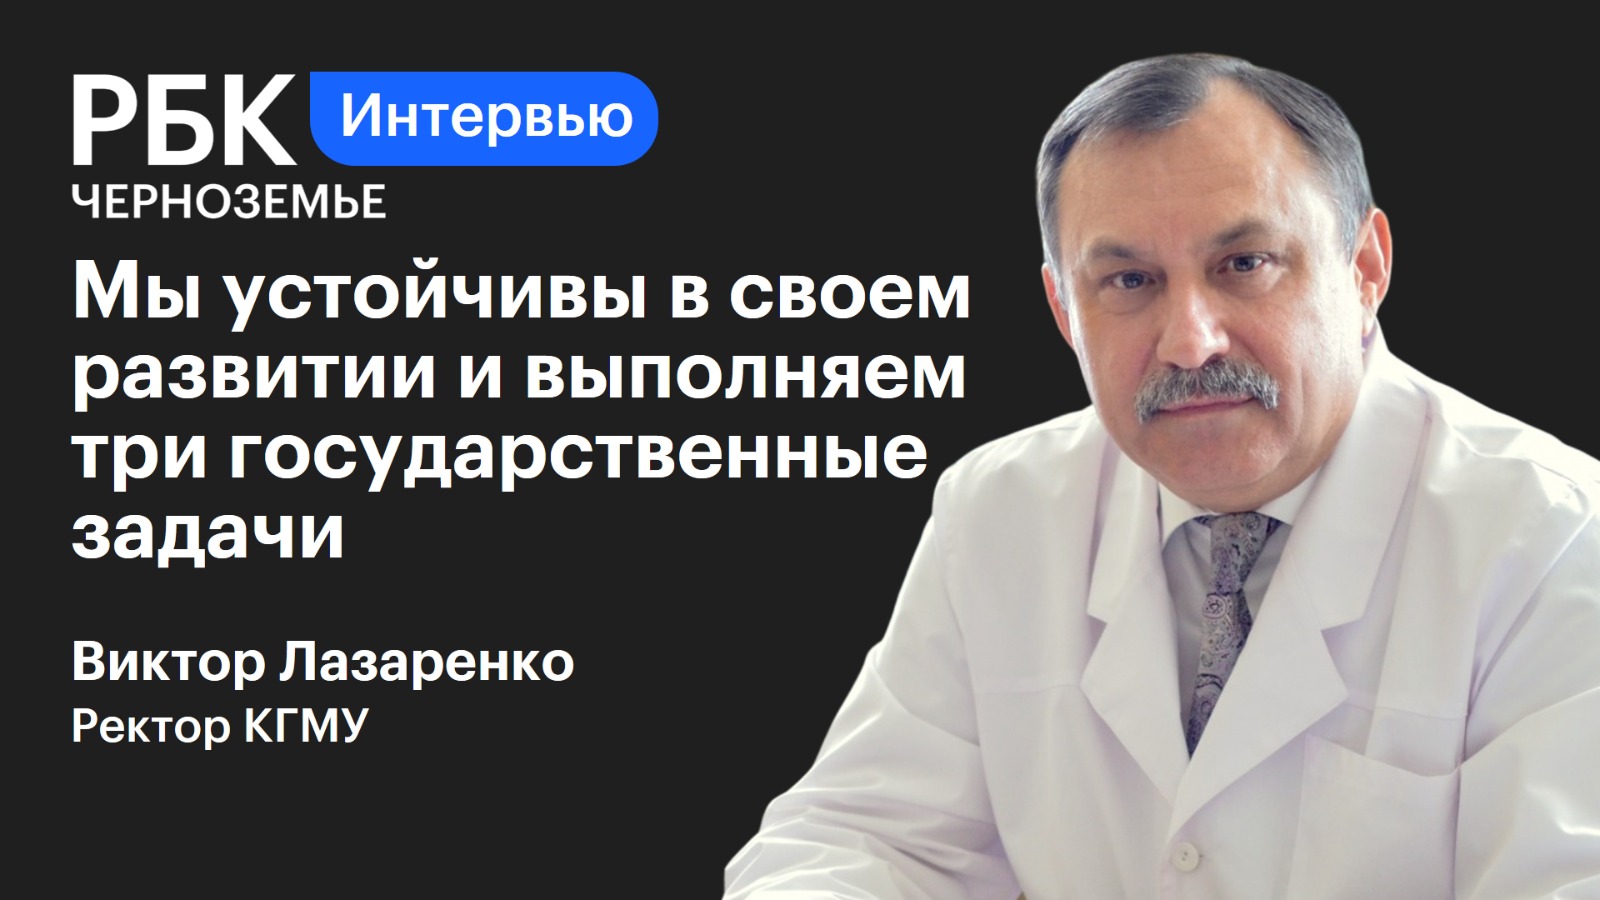 Виктор Лазаренко: «Мы устойчивы в своем развитии и выполняем три государственные задачи»